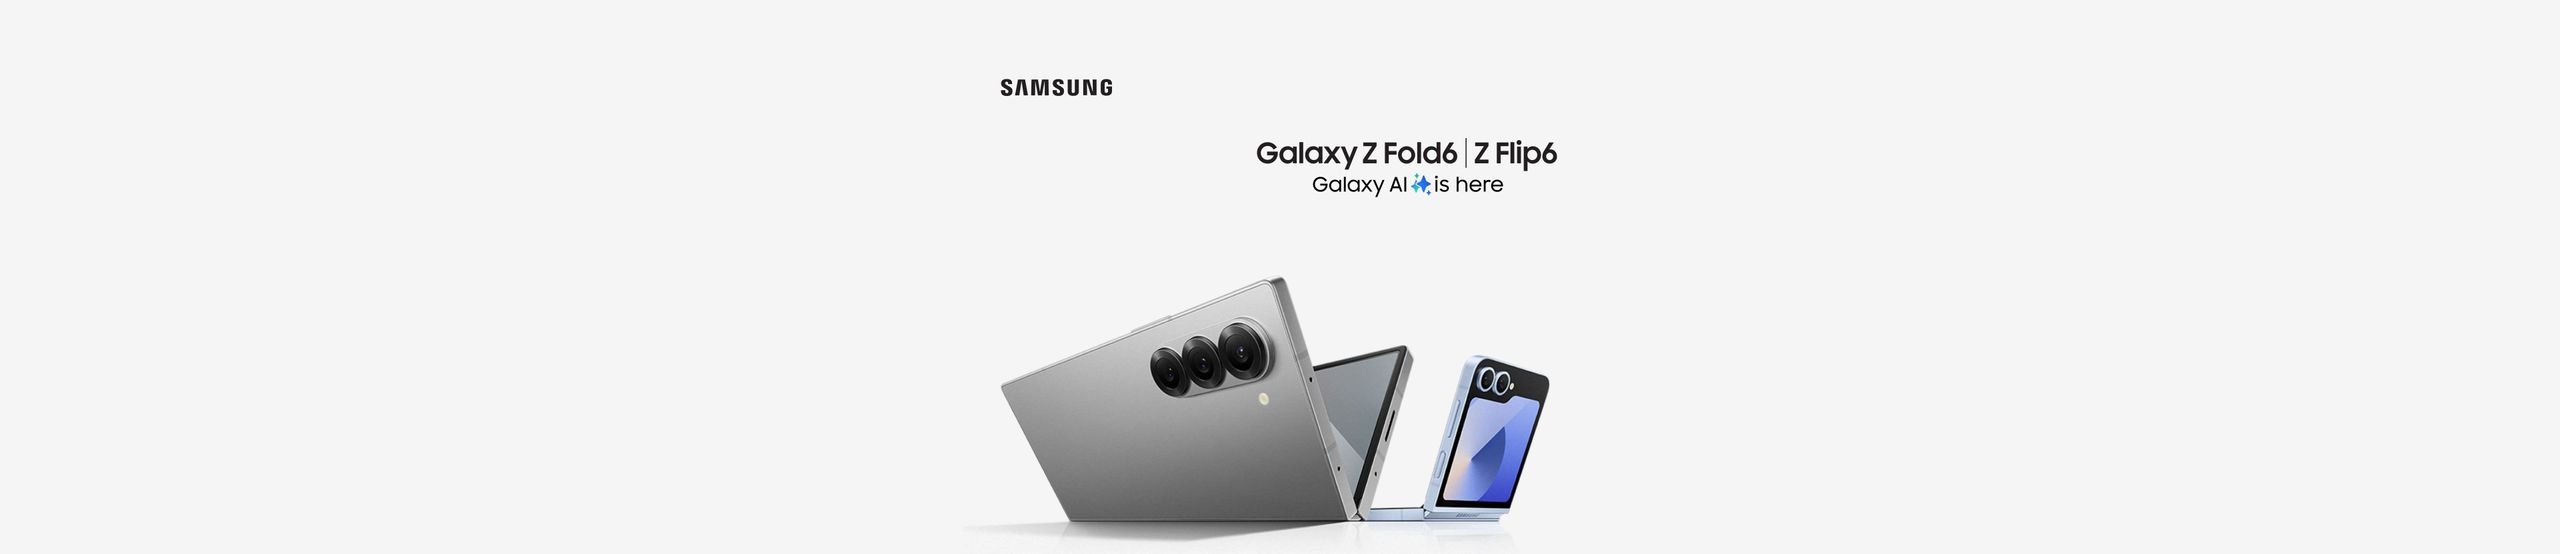 Neue Samsung Galaxy Z-Serie